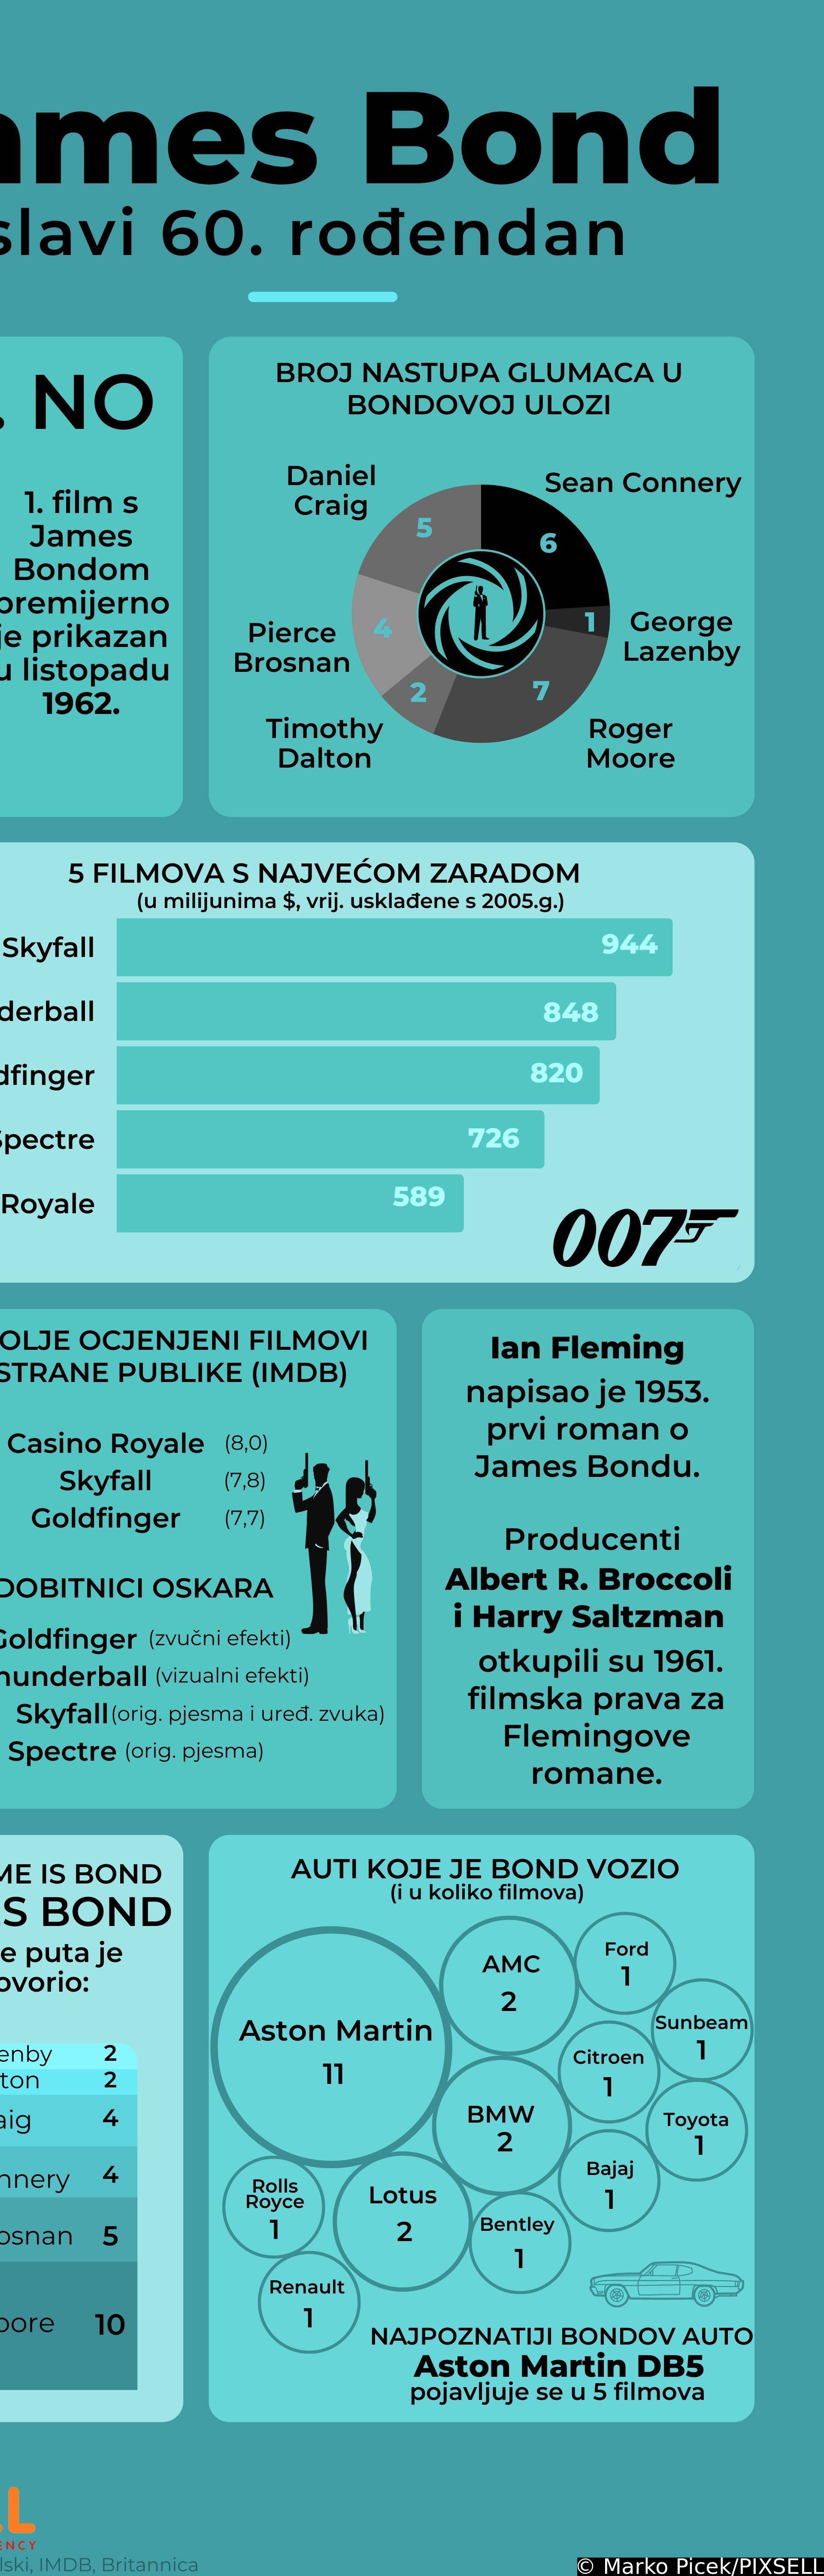 Infografika: James Bond slavi 60. rođendan